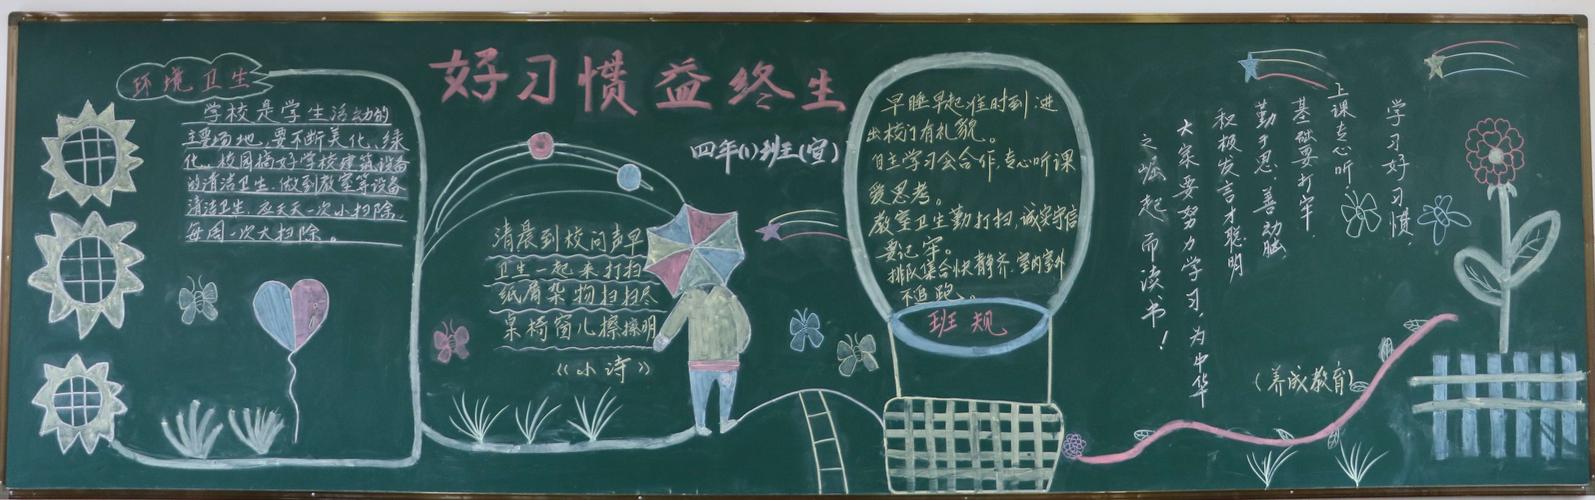 好习惯益终身昌山小学开展黑板报评比活动 写美篇为了加强学生